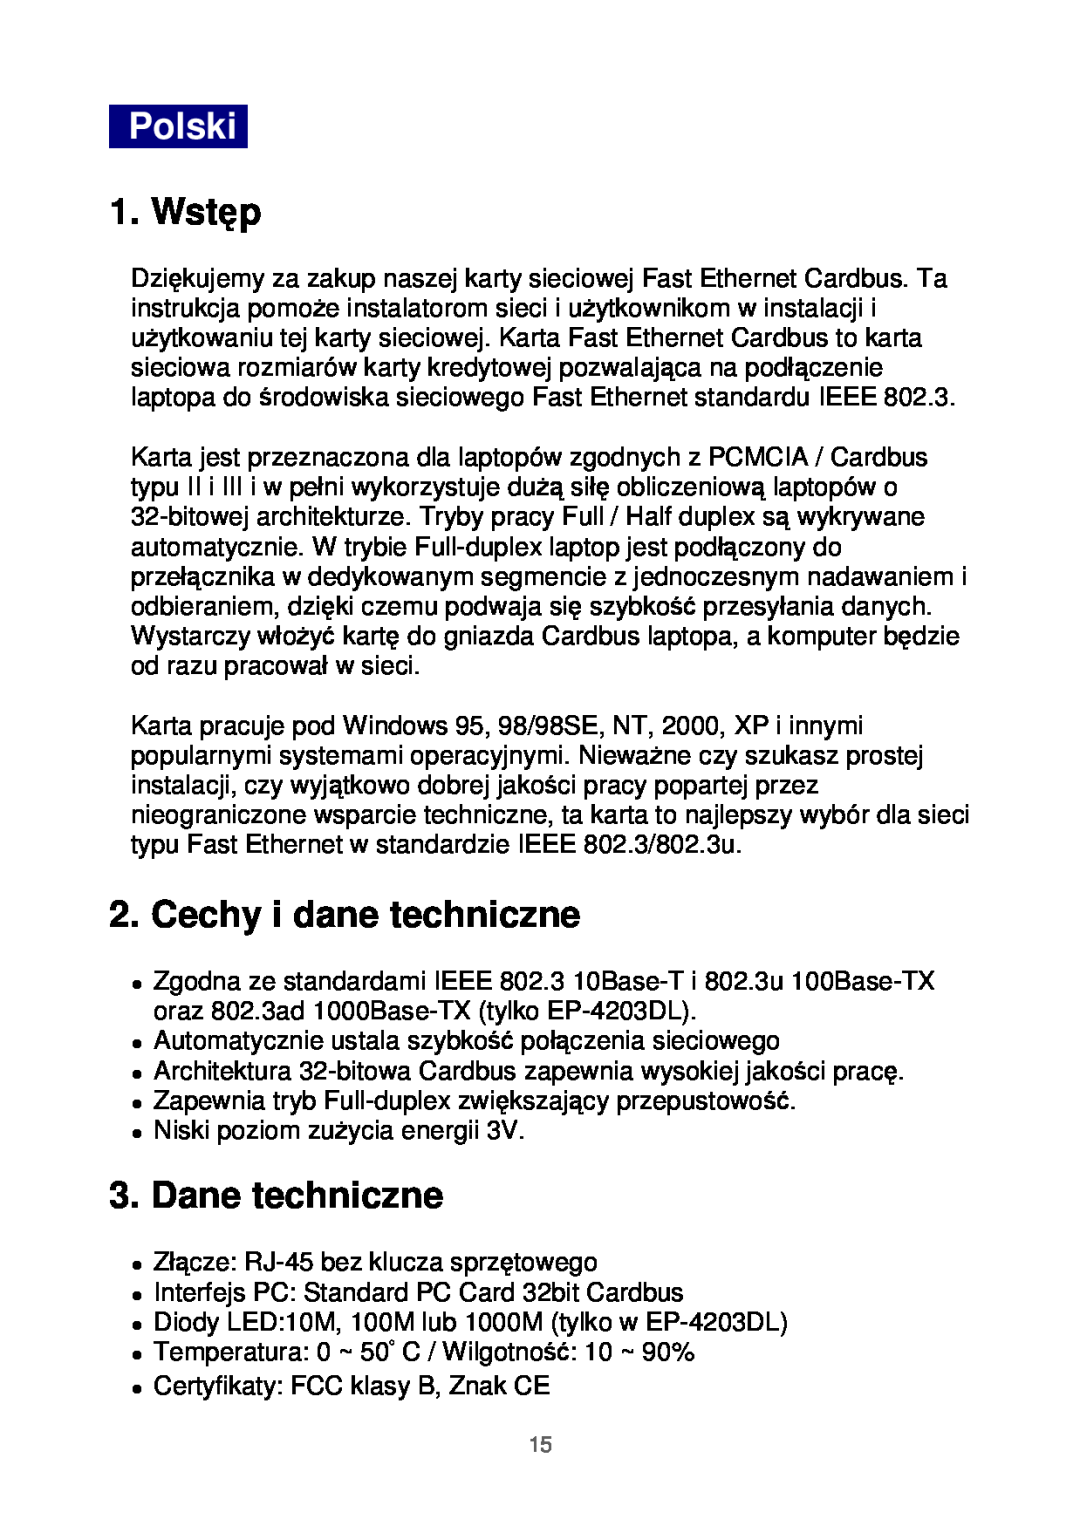 Edimax Technology Ethernet Cardbus Adapter manual Polski, Wstęp, Cechy i dane techniczne, Dane techniczne 